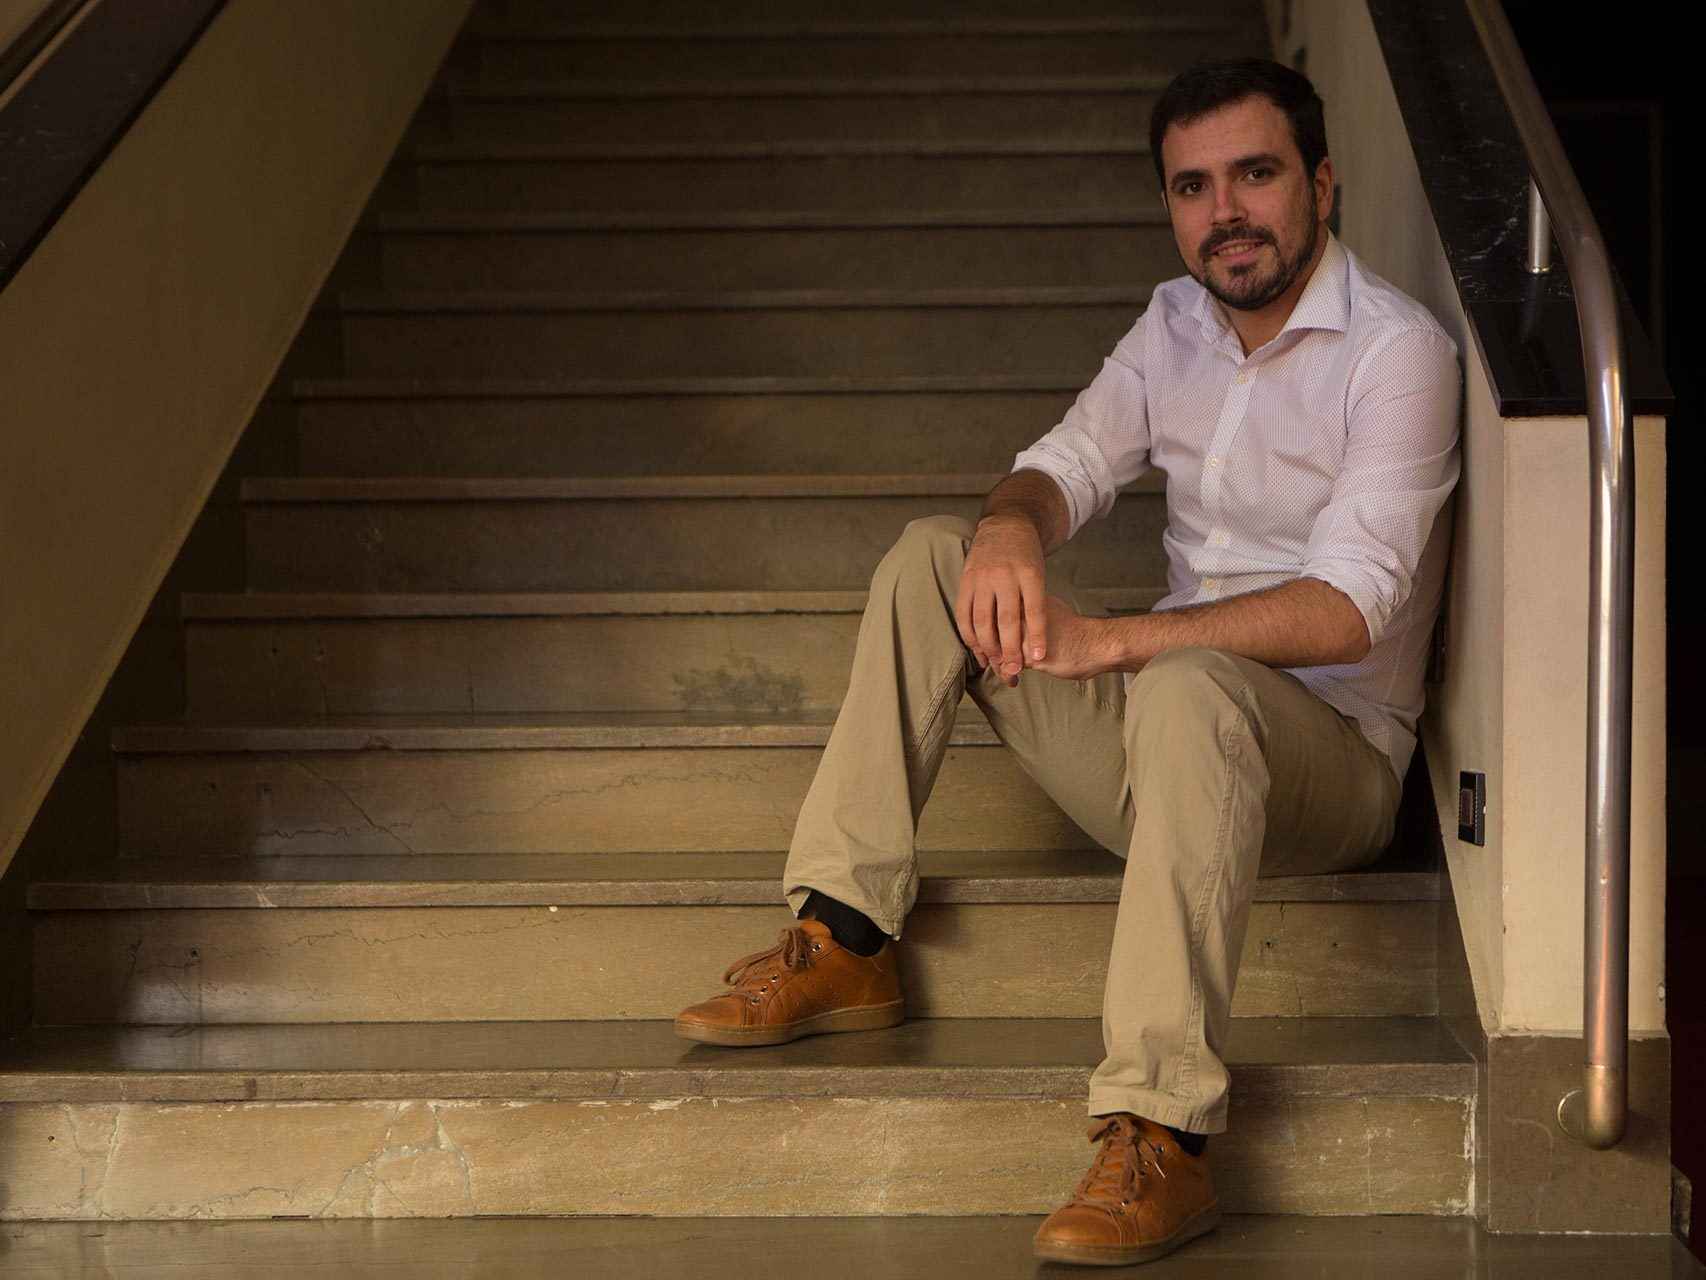 El nuevo líder de IU, en unas escaleras del teatro Fígaro.